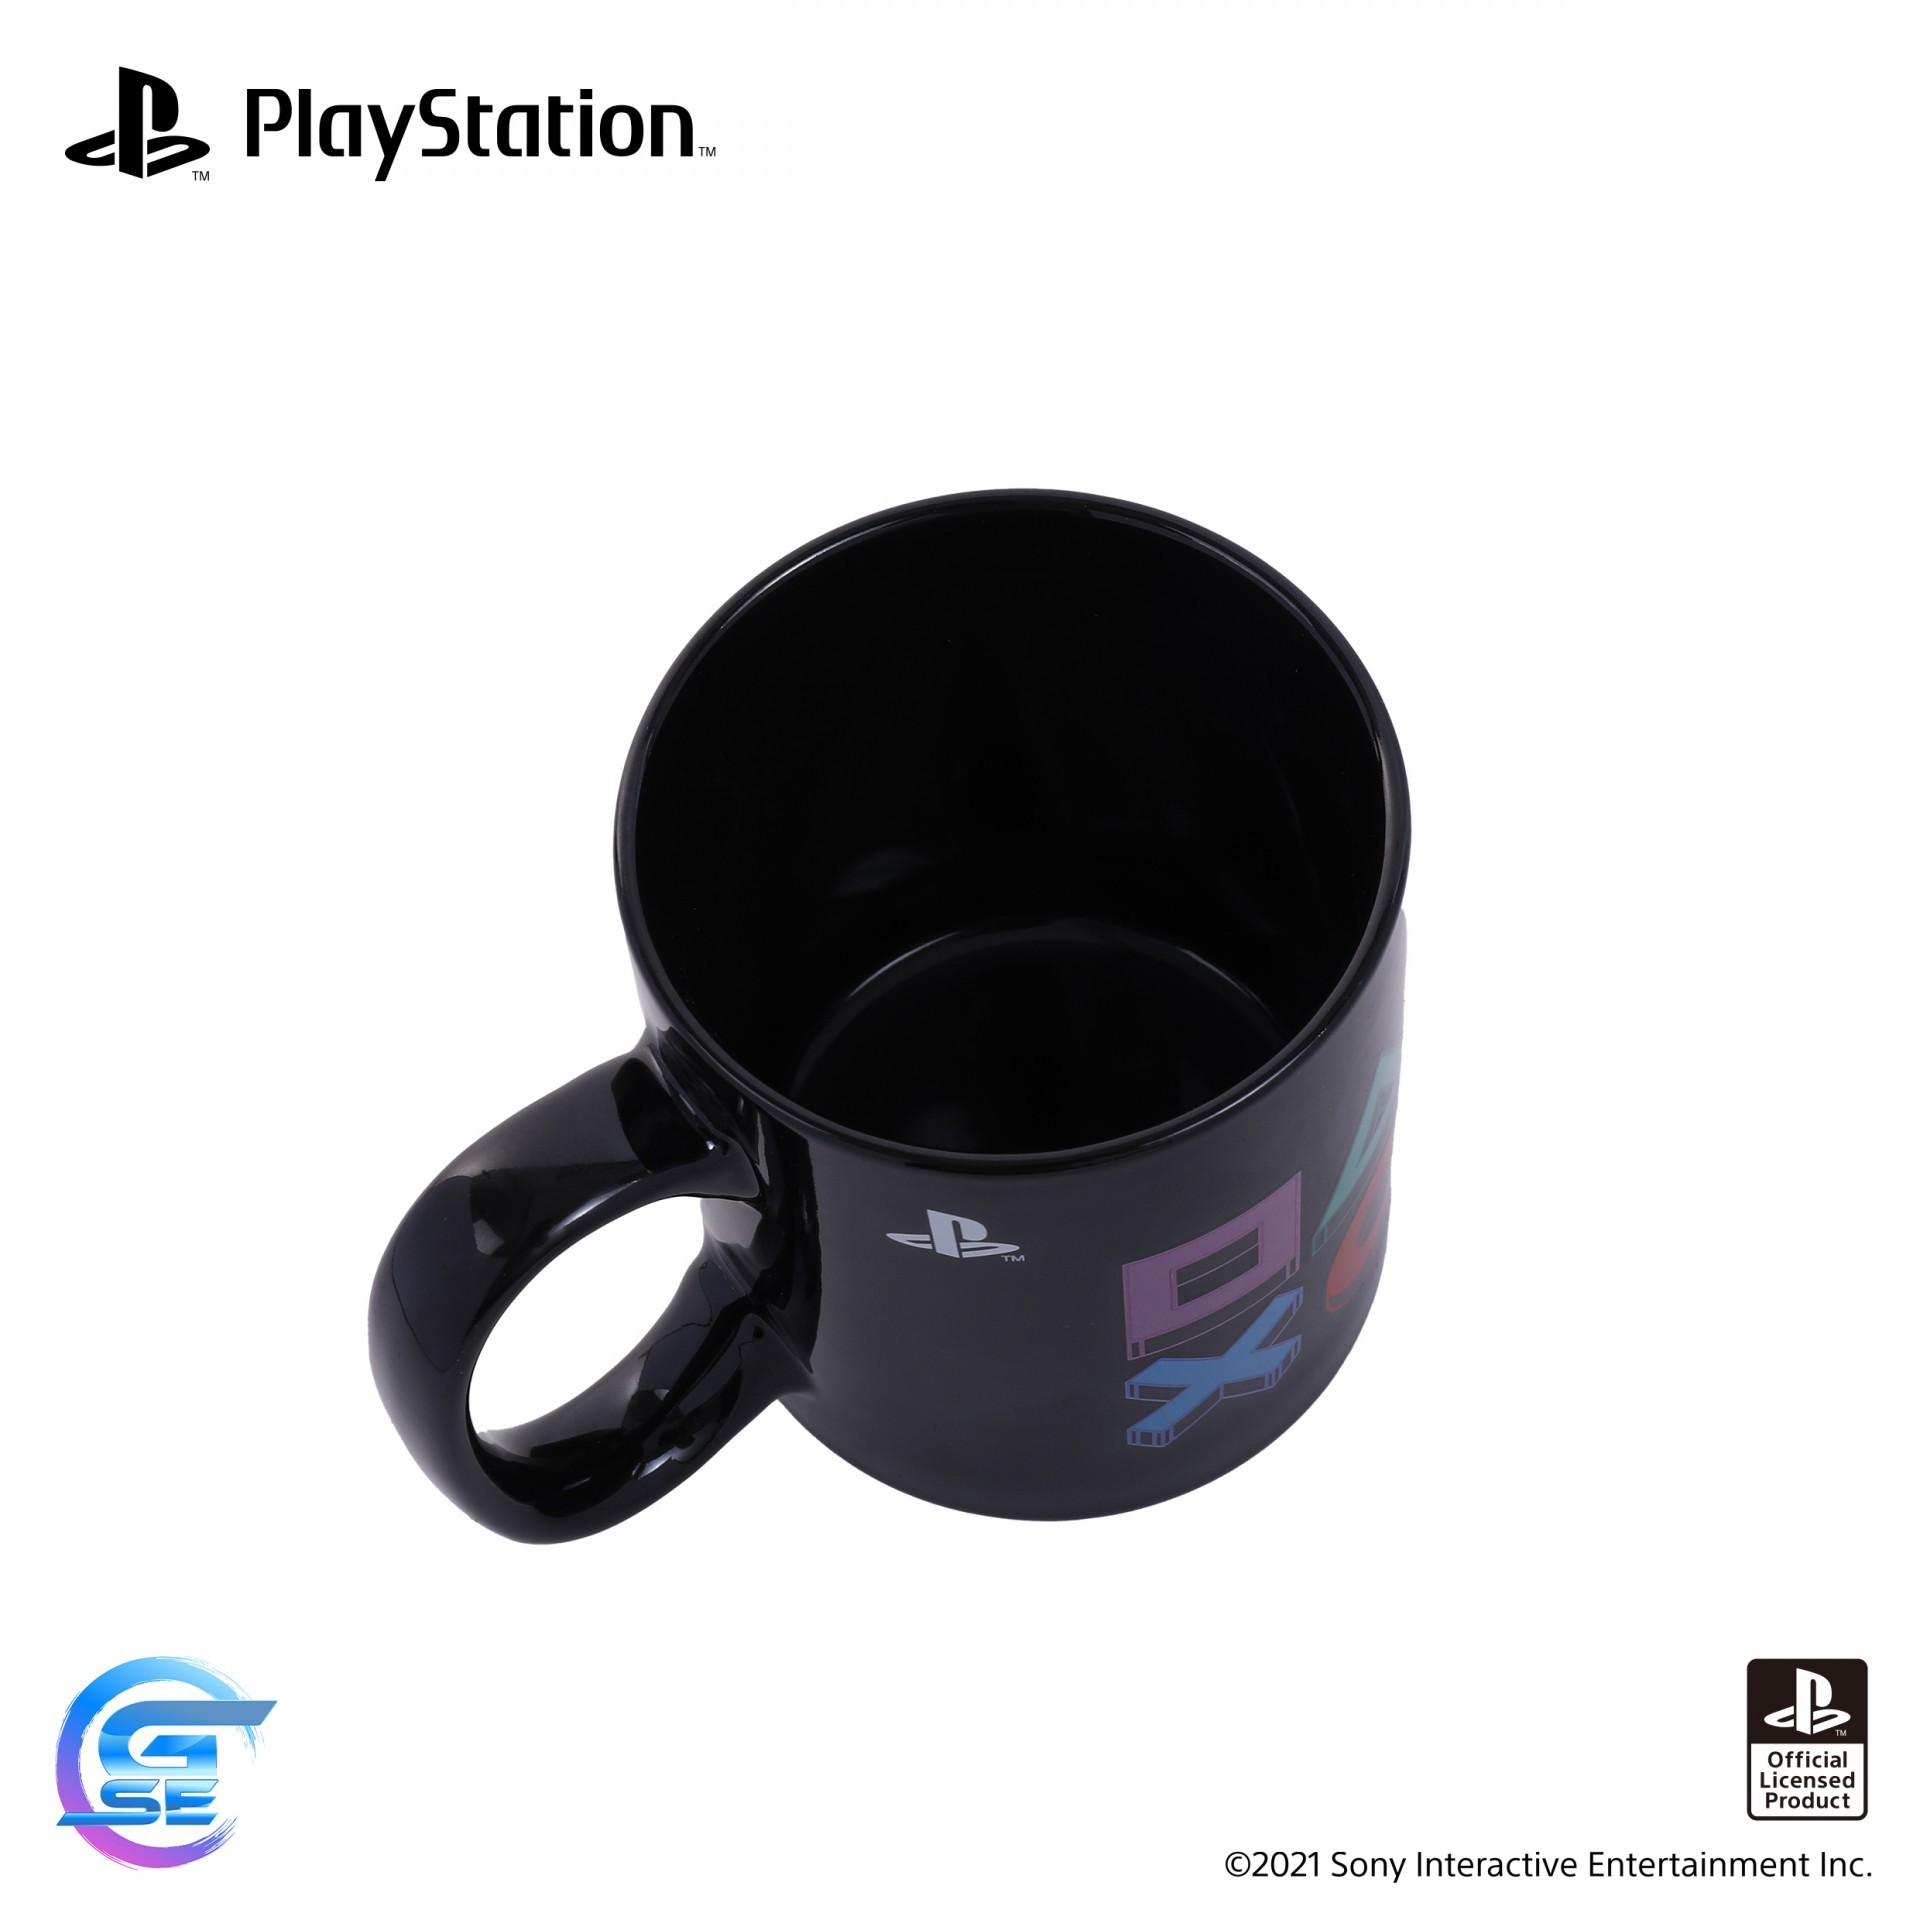 官方授權 PlayStation 主題周邊產品於台灣地區將延期出貨